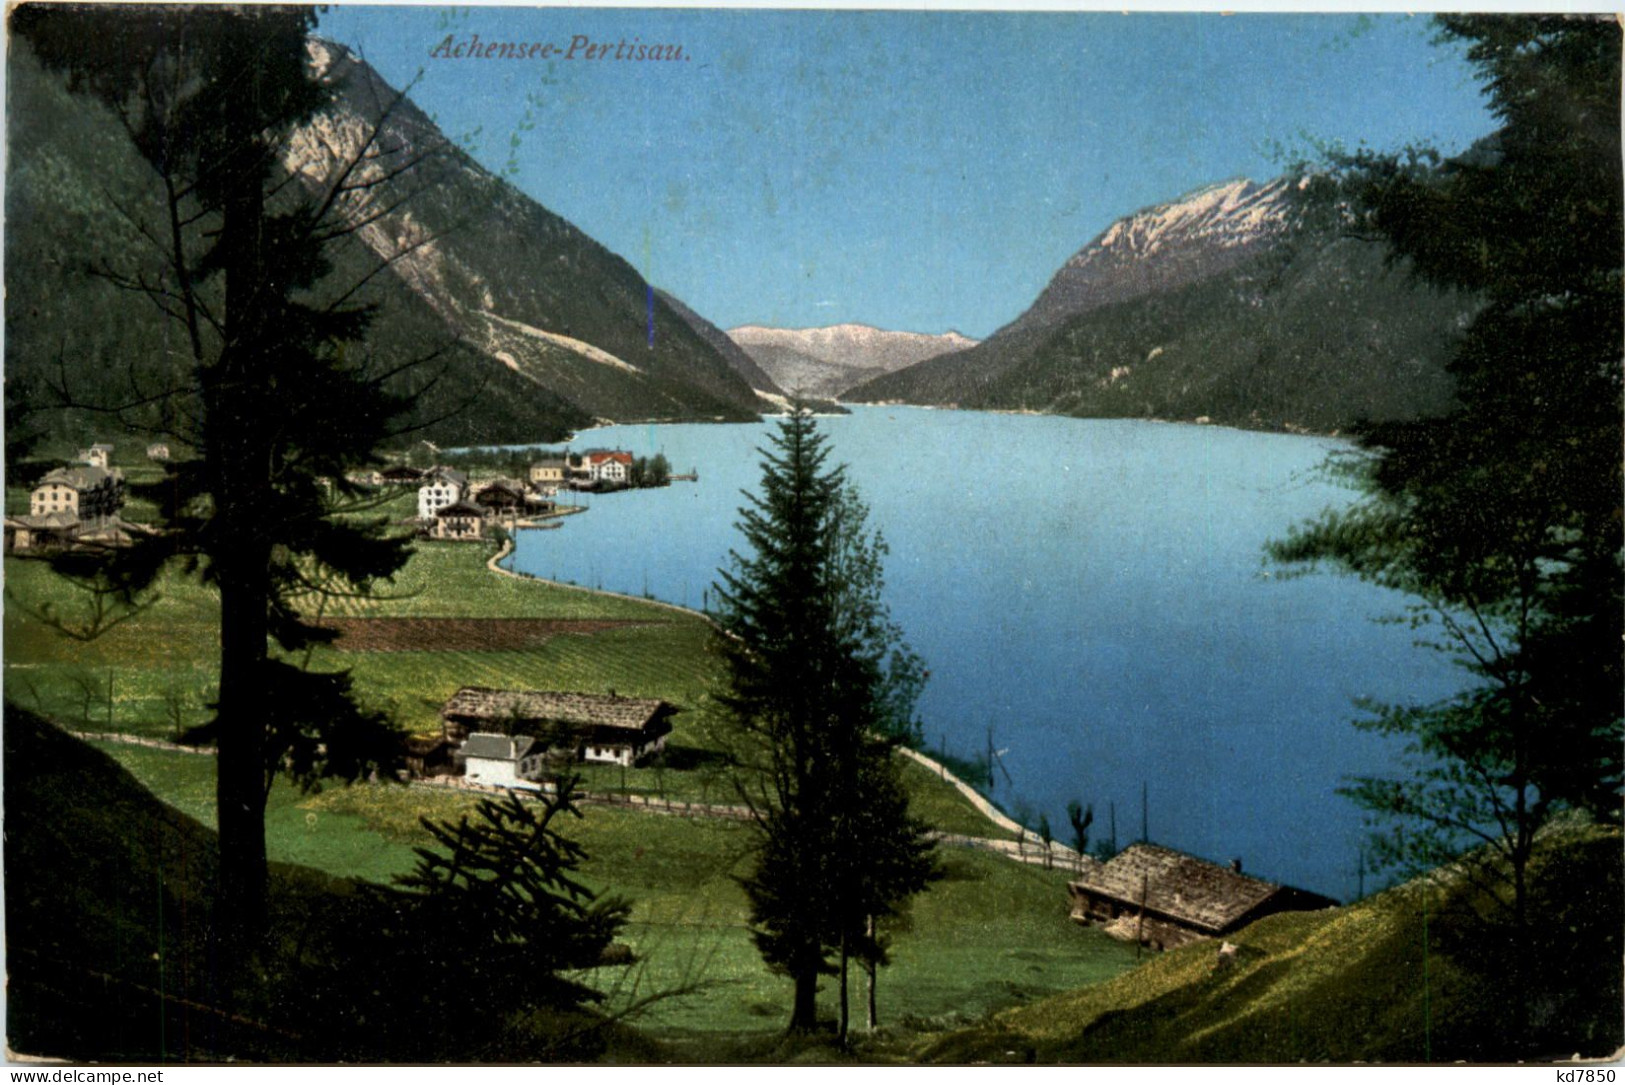 Gruss Vom Achensee, Pertisau - Schwaz